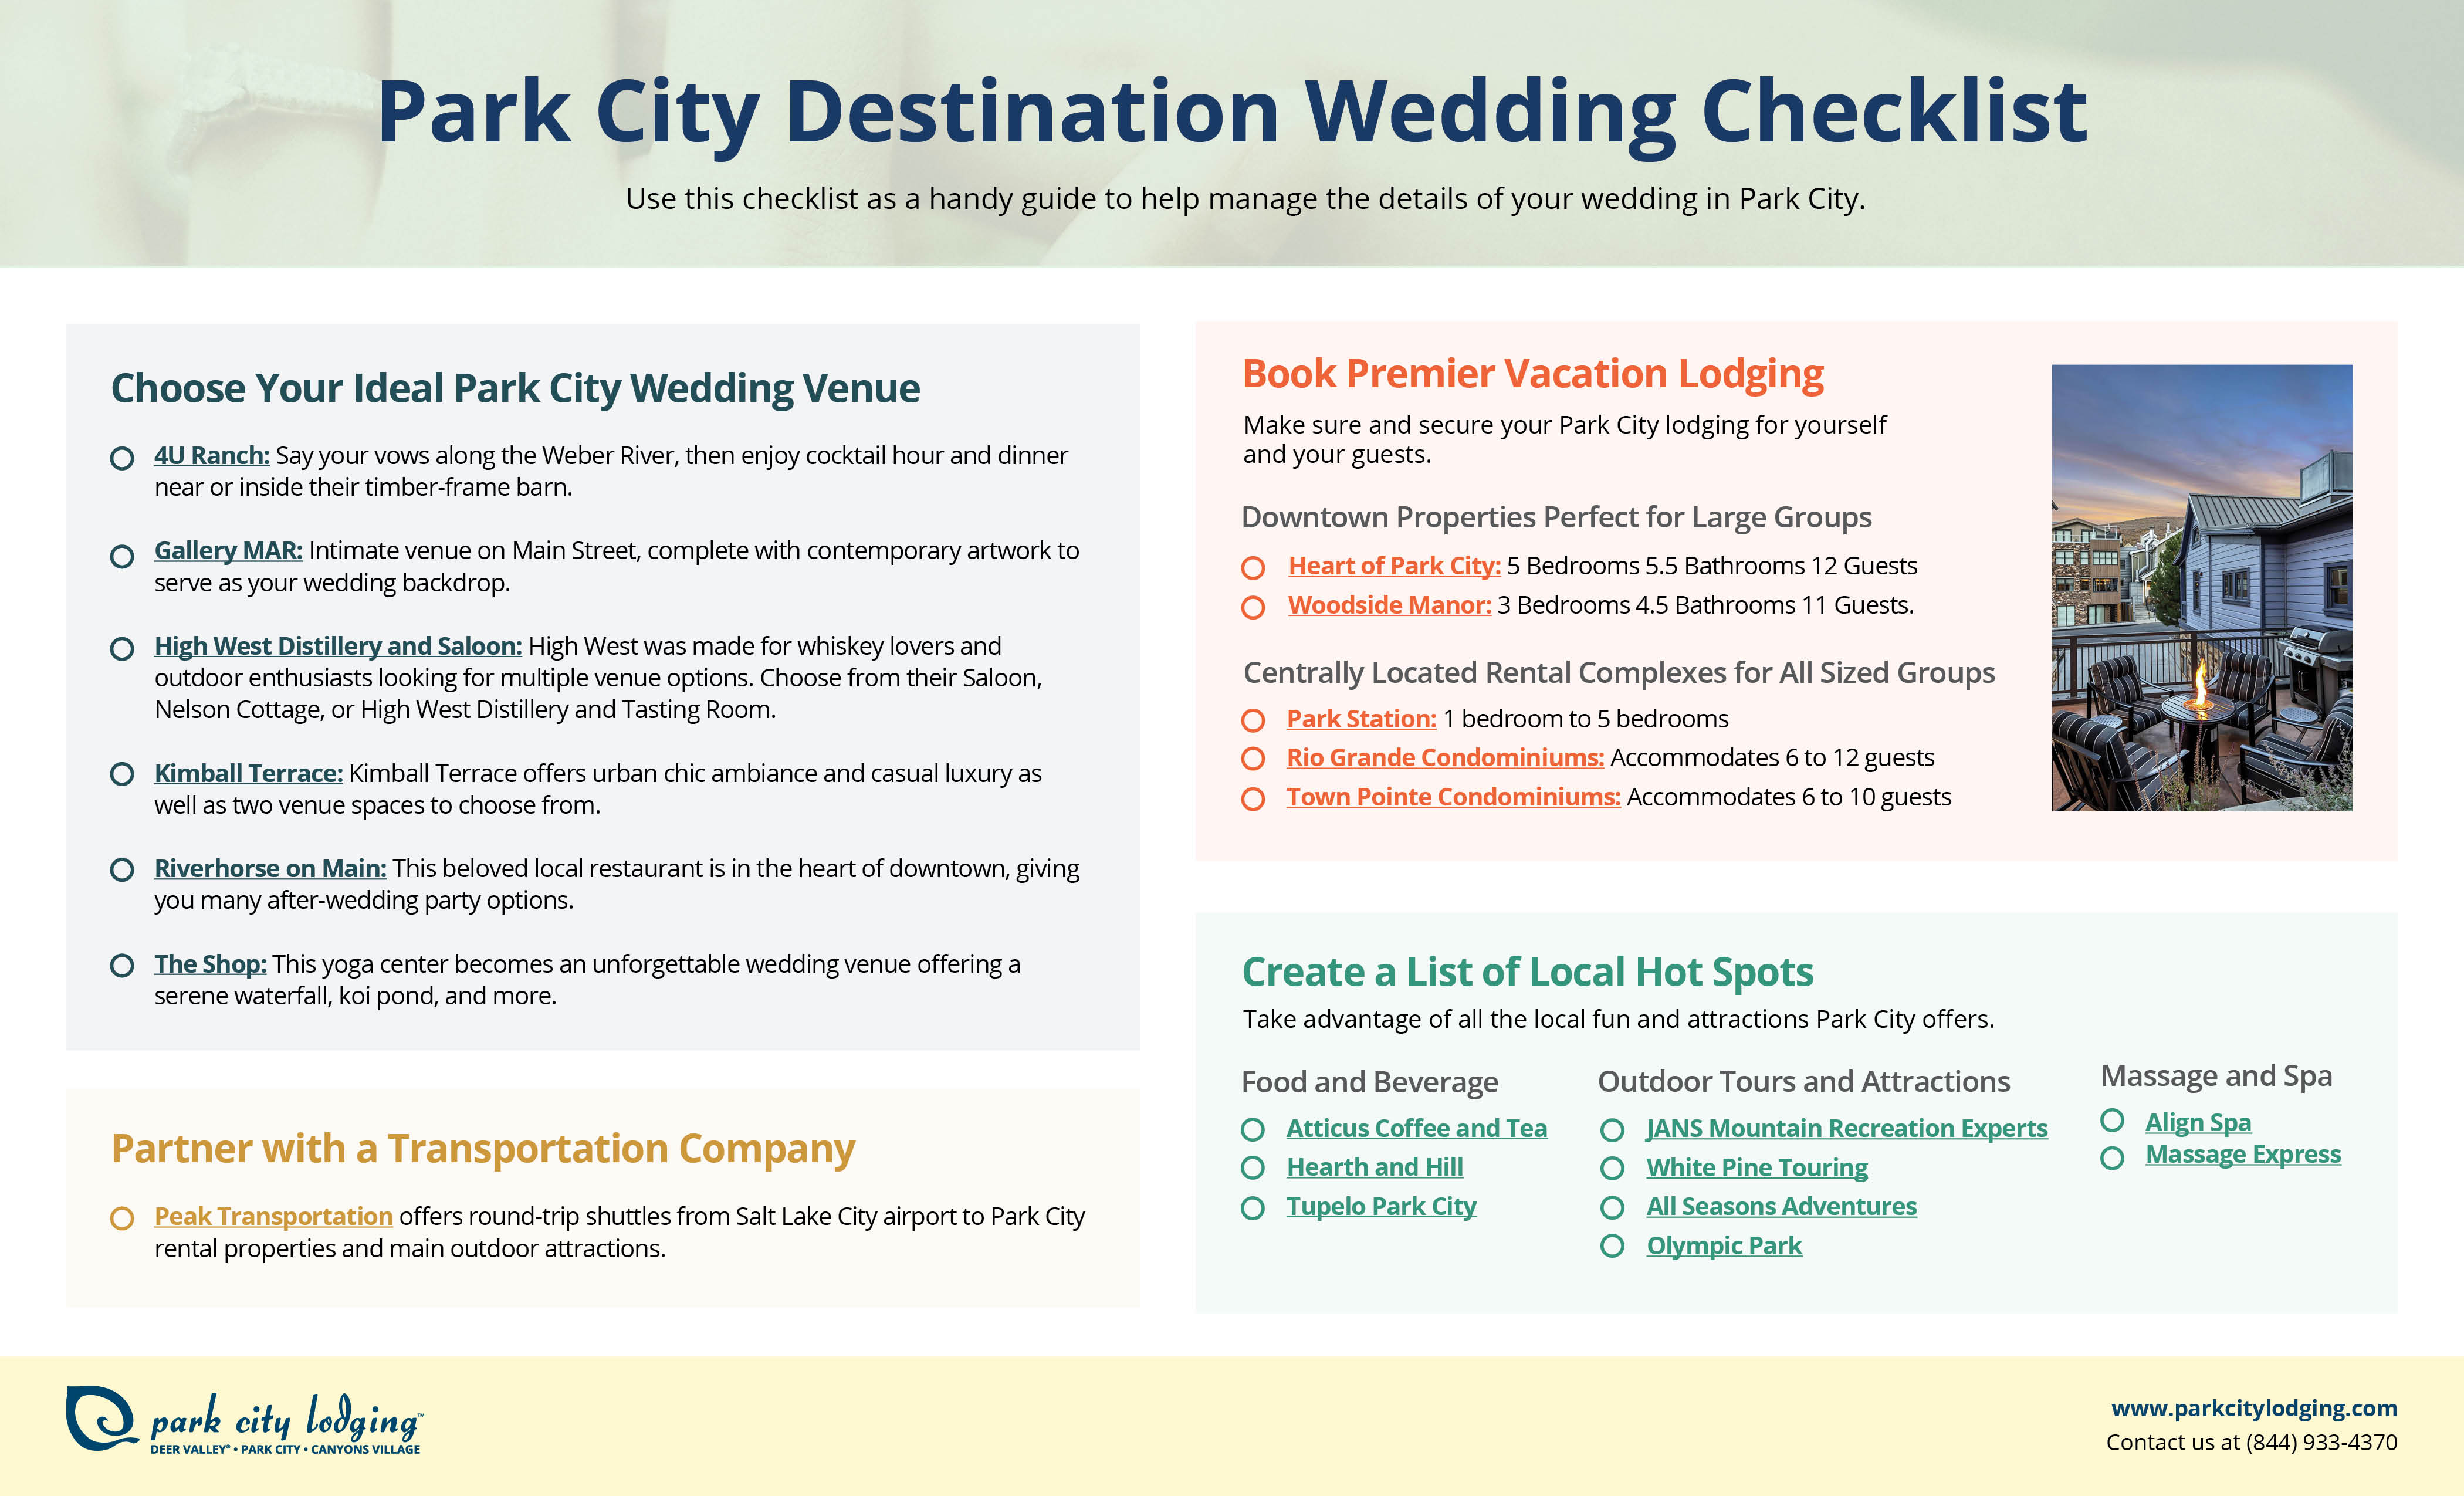 A checklist for a Park City destination wedding.